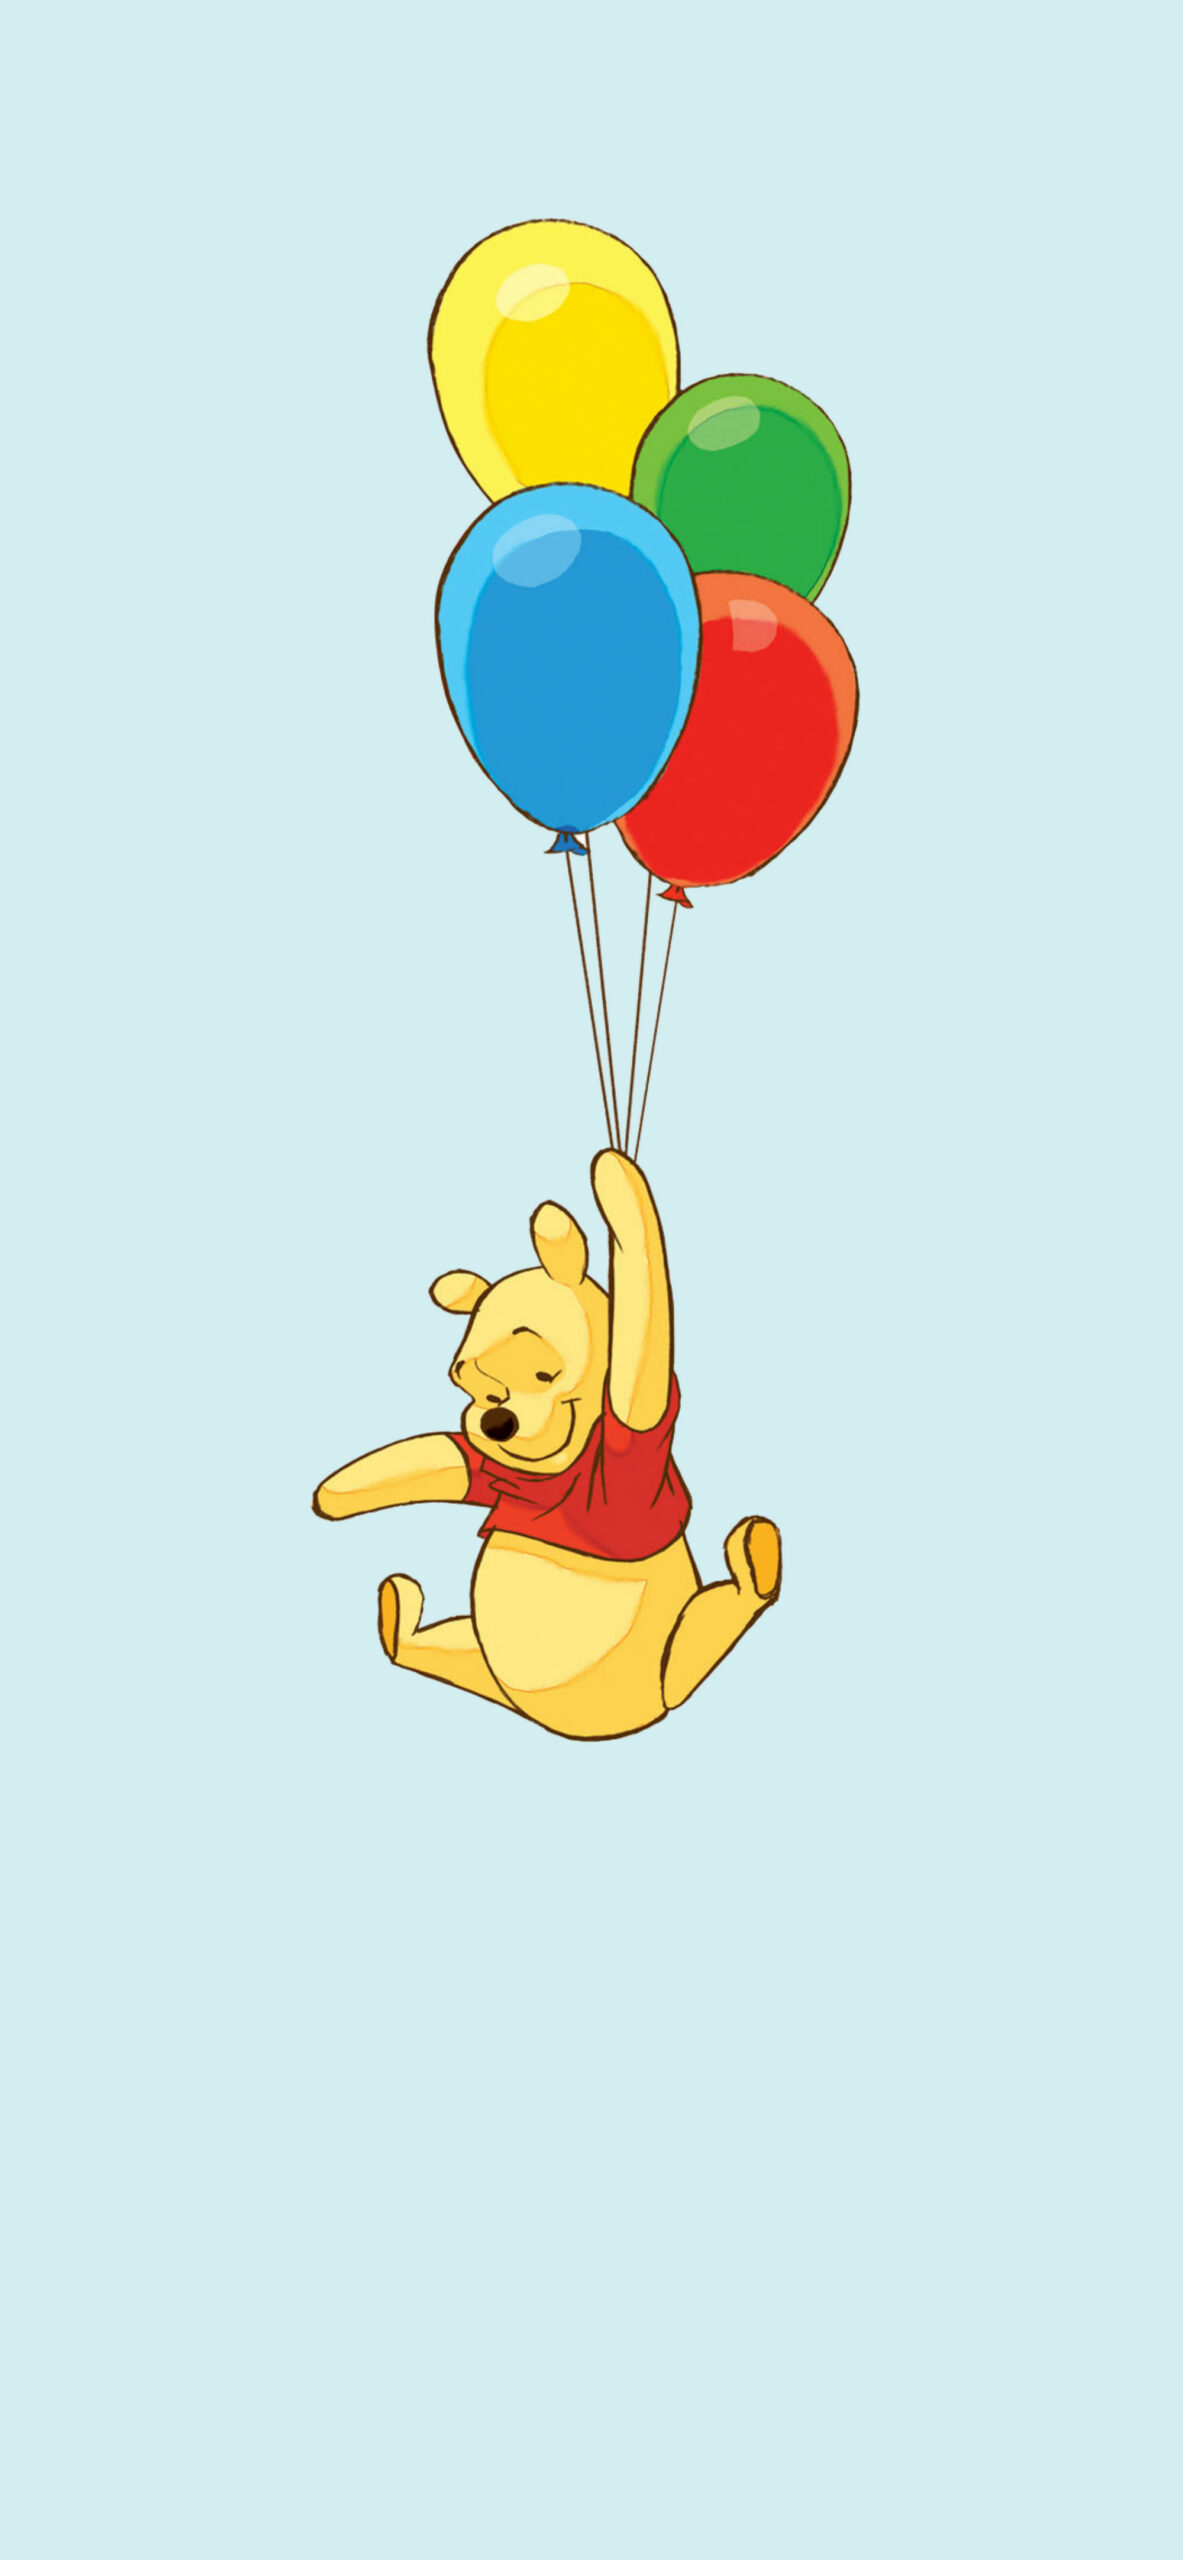 Versterken Groot Ongeautoriseerd Winnie the Pooh with Balloons Wallpaper - Cool Disney Wallpapers